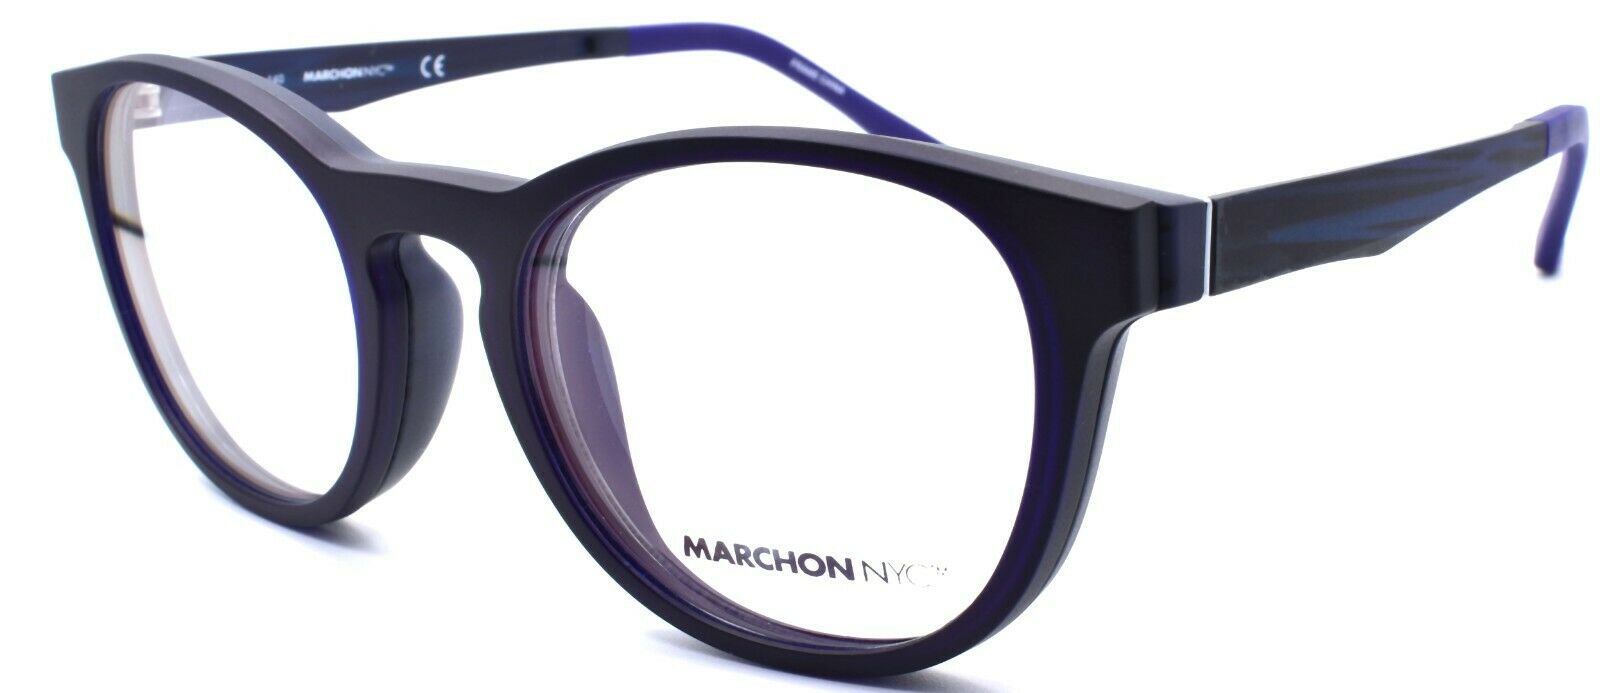 2-Marchon M-1502 412 Eyeglasses Frames 50-19-140 Matte Navy + 2 Magnetic Clip Ons-886895484374-IKSpecs